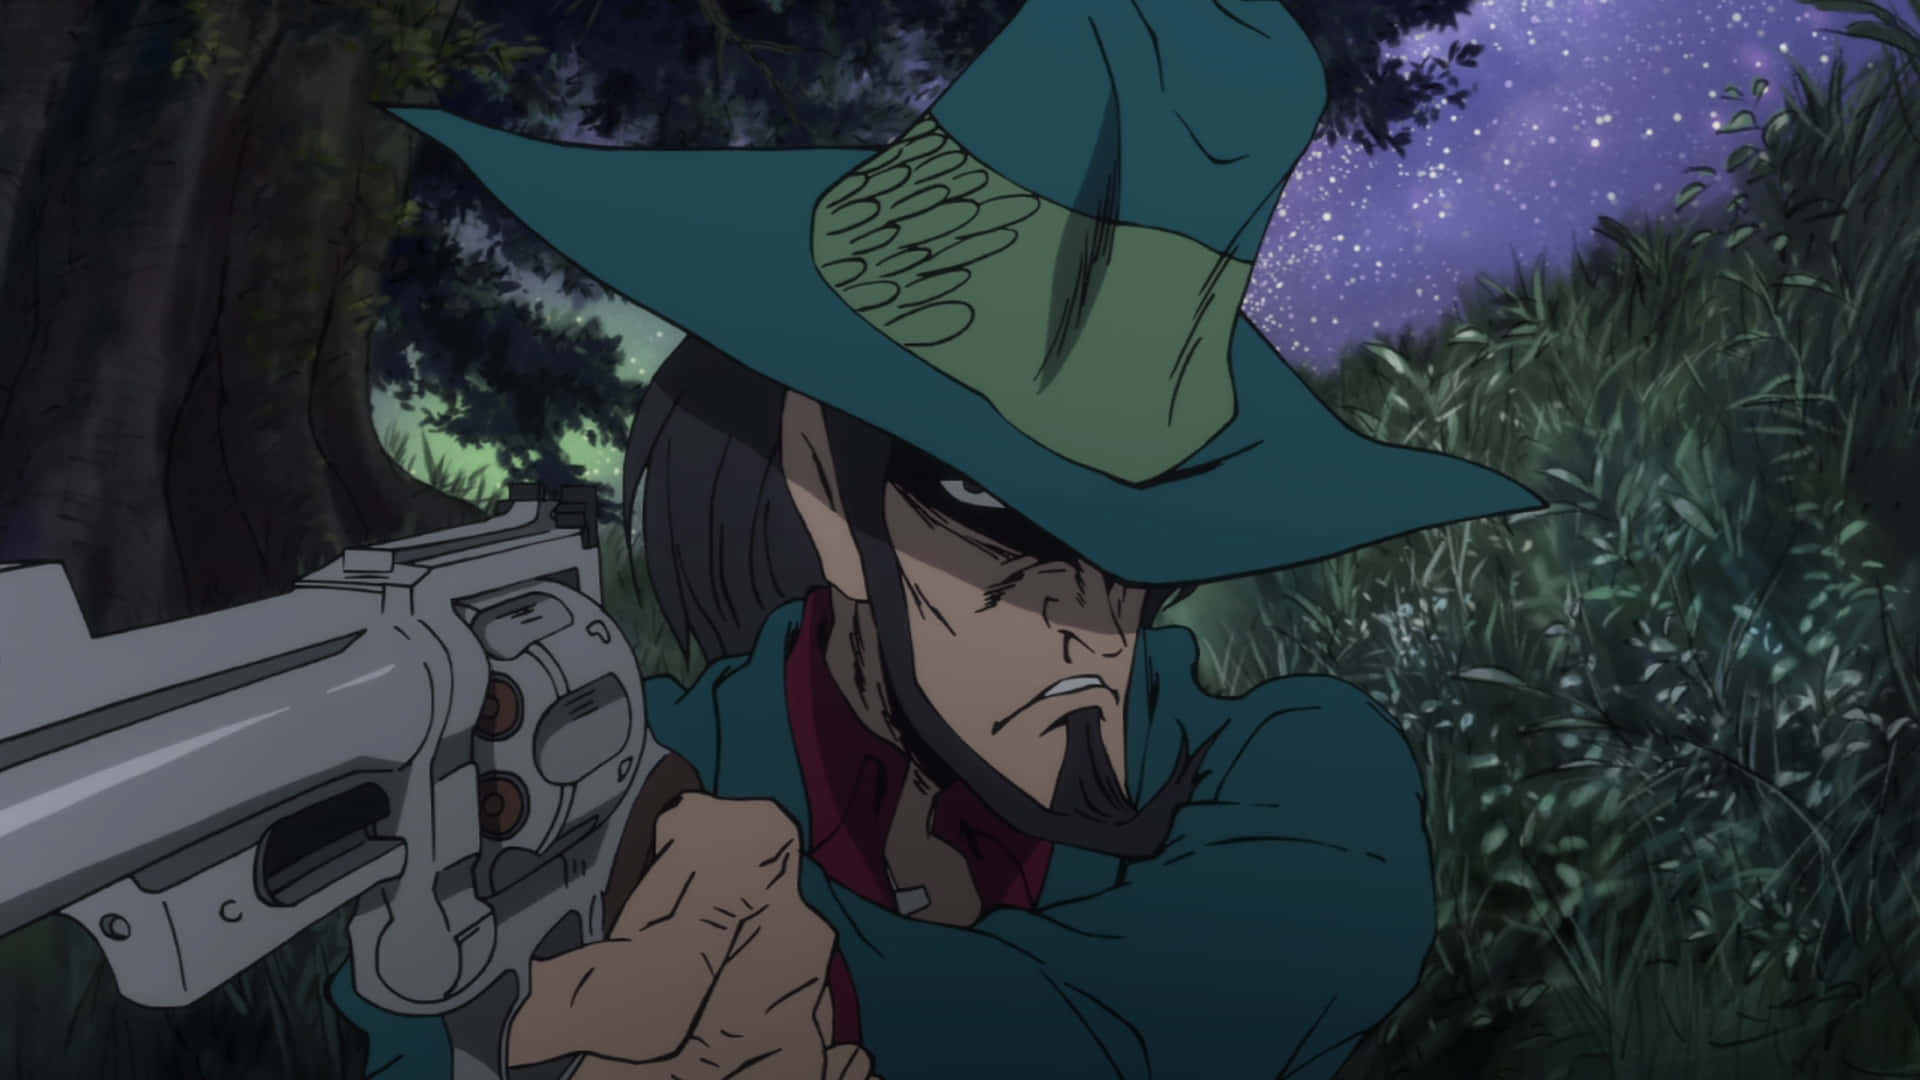 Daisukejigen Adopta Una Pose Con Su Característico Sombrero Y Pistola En La Serie De Anime Lupin Iii. Fondo de pantalla